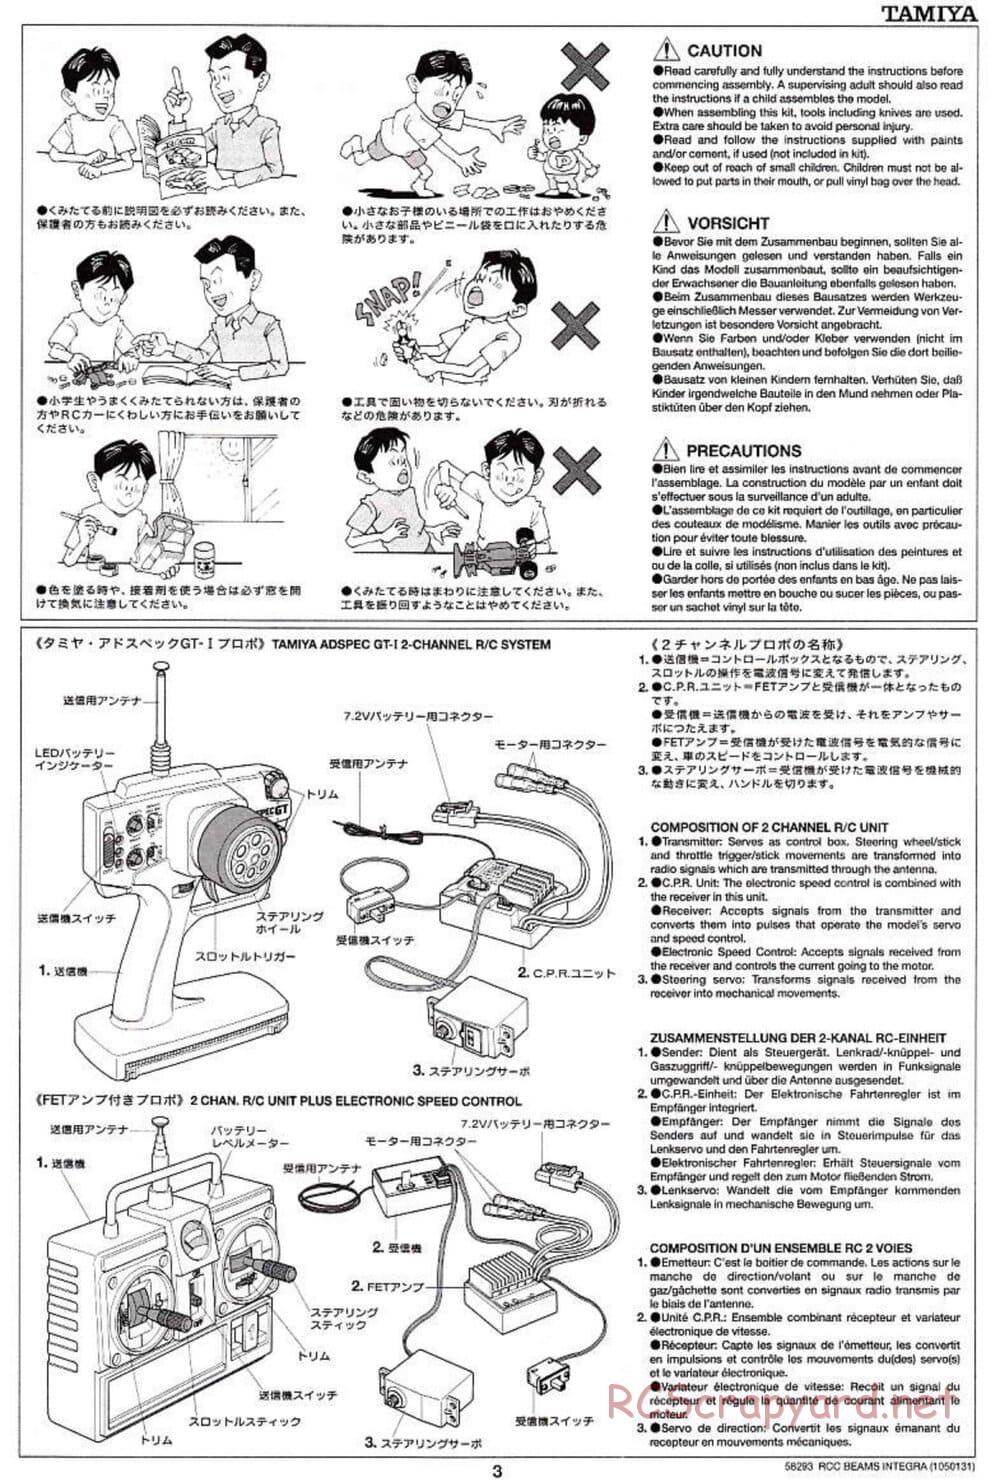 Tamiya - Beams Integra - TL-01 LA Chassis - Manual - Page 3